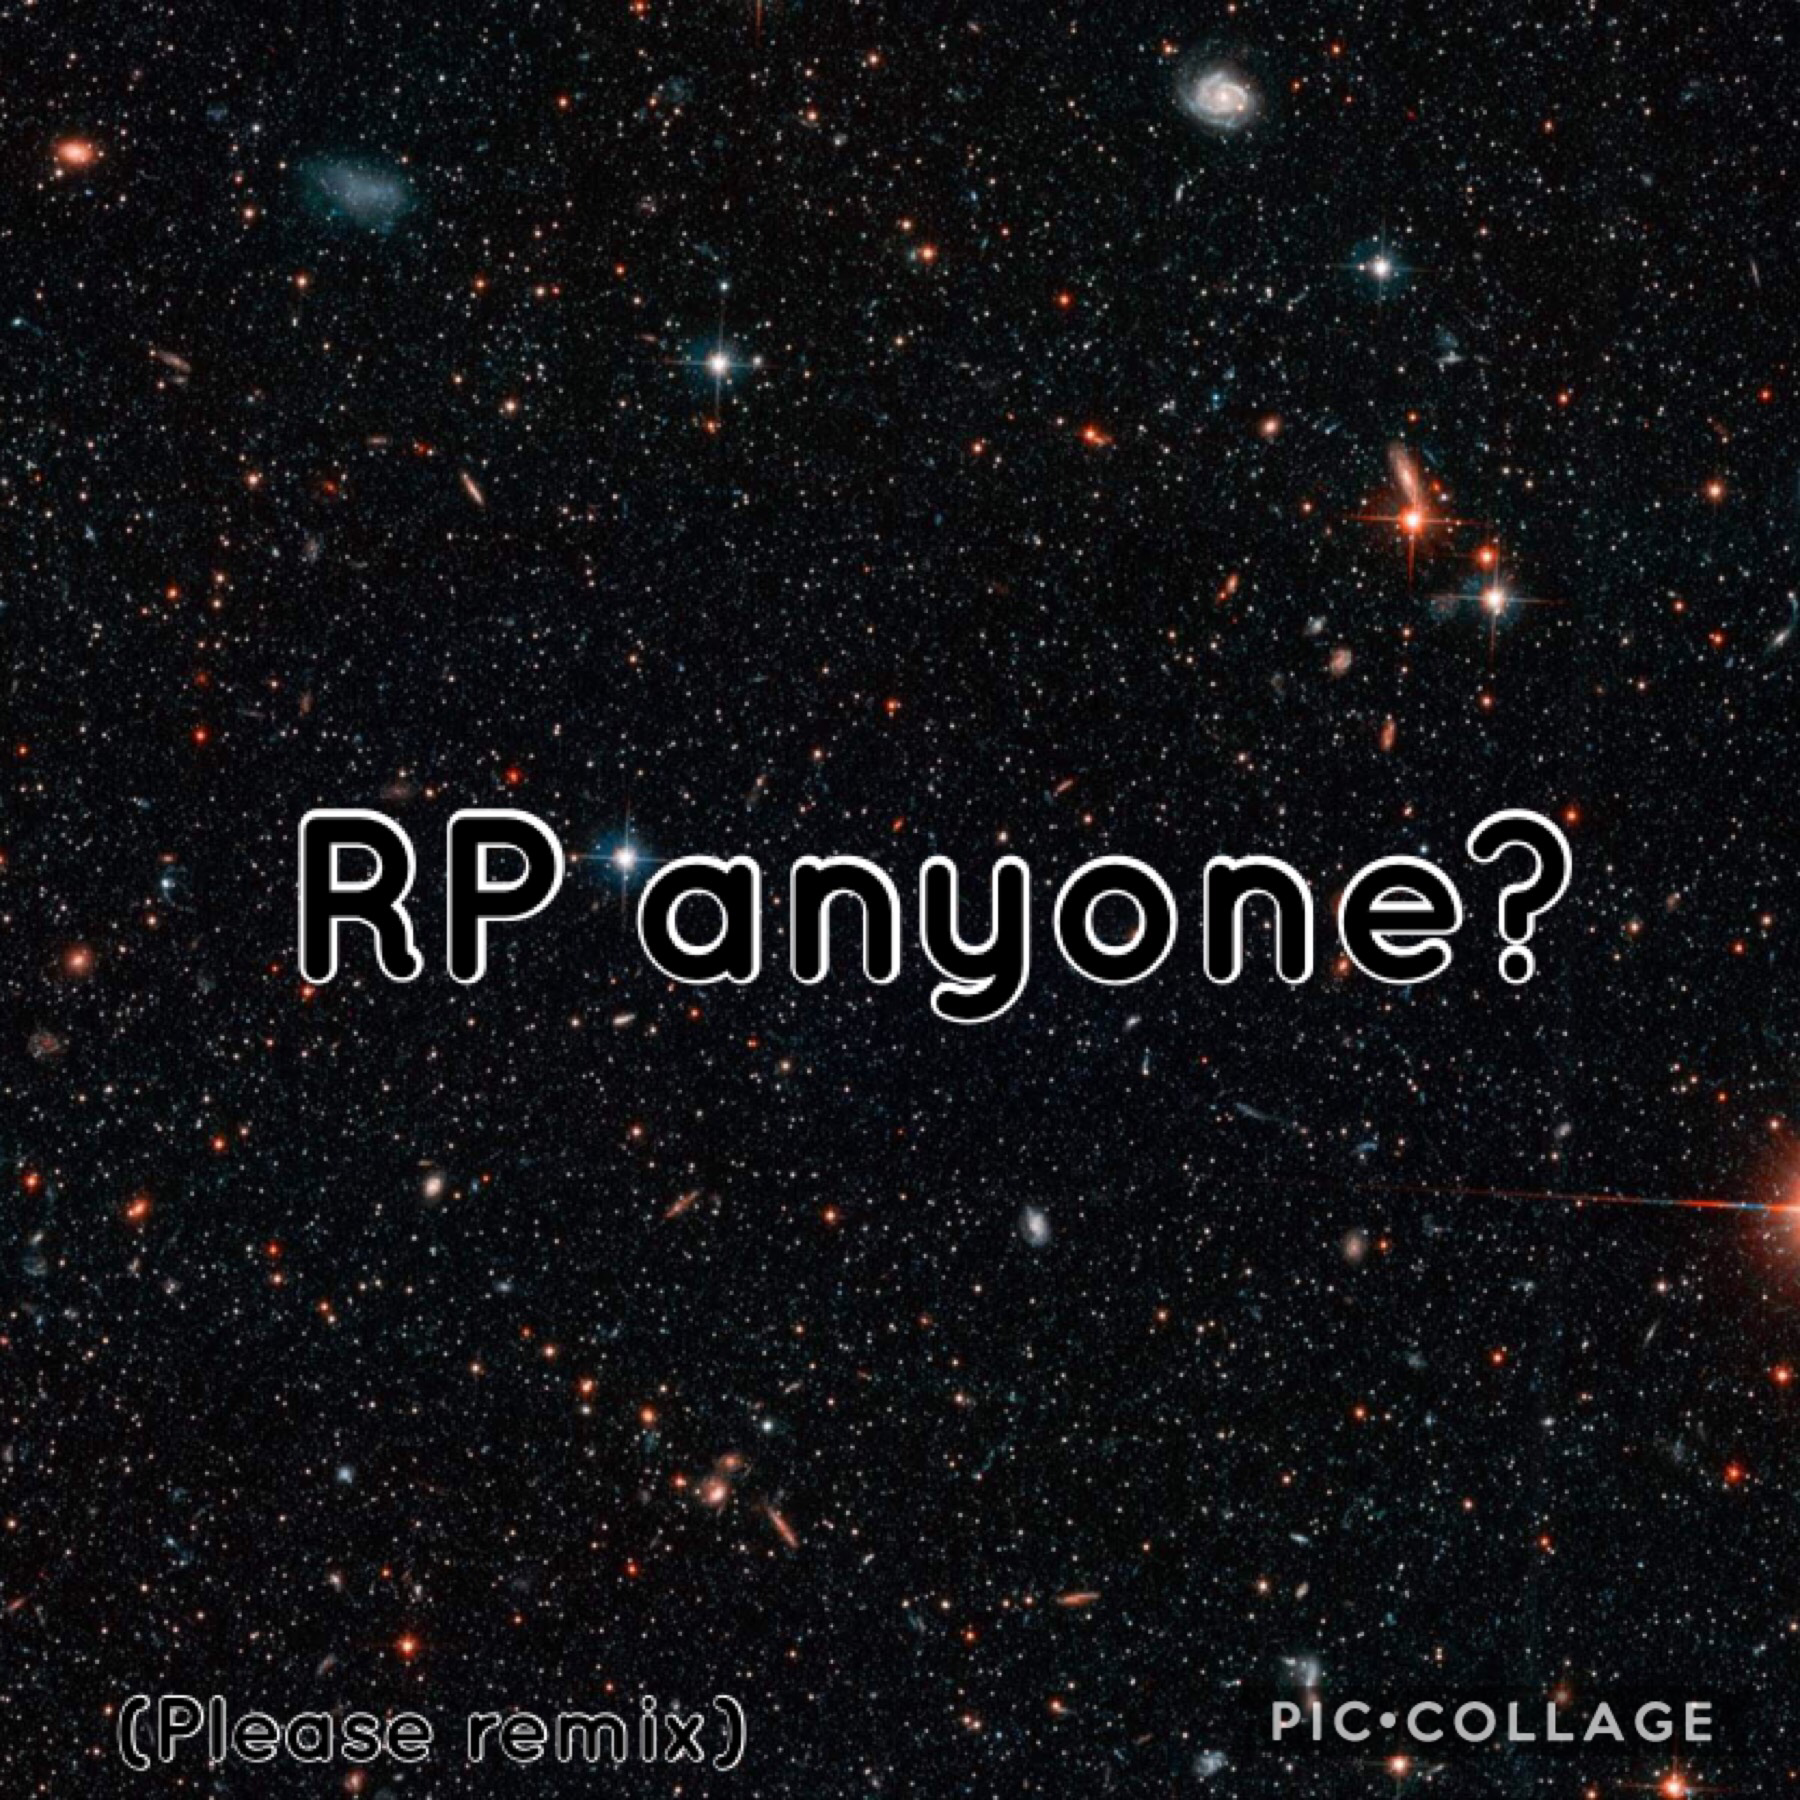 RP anyone?